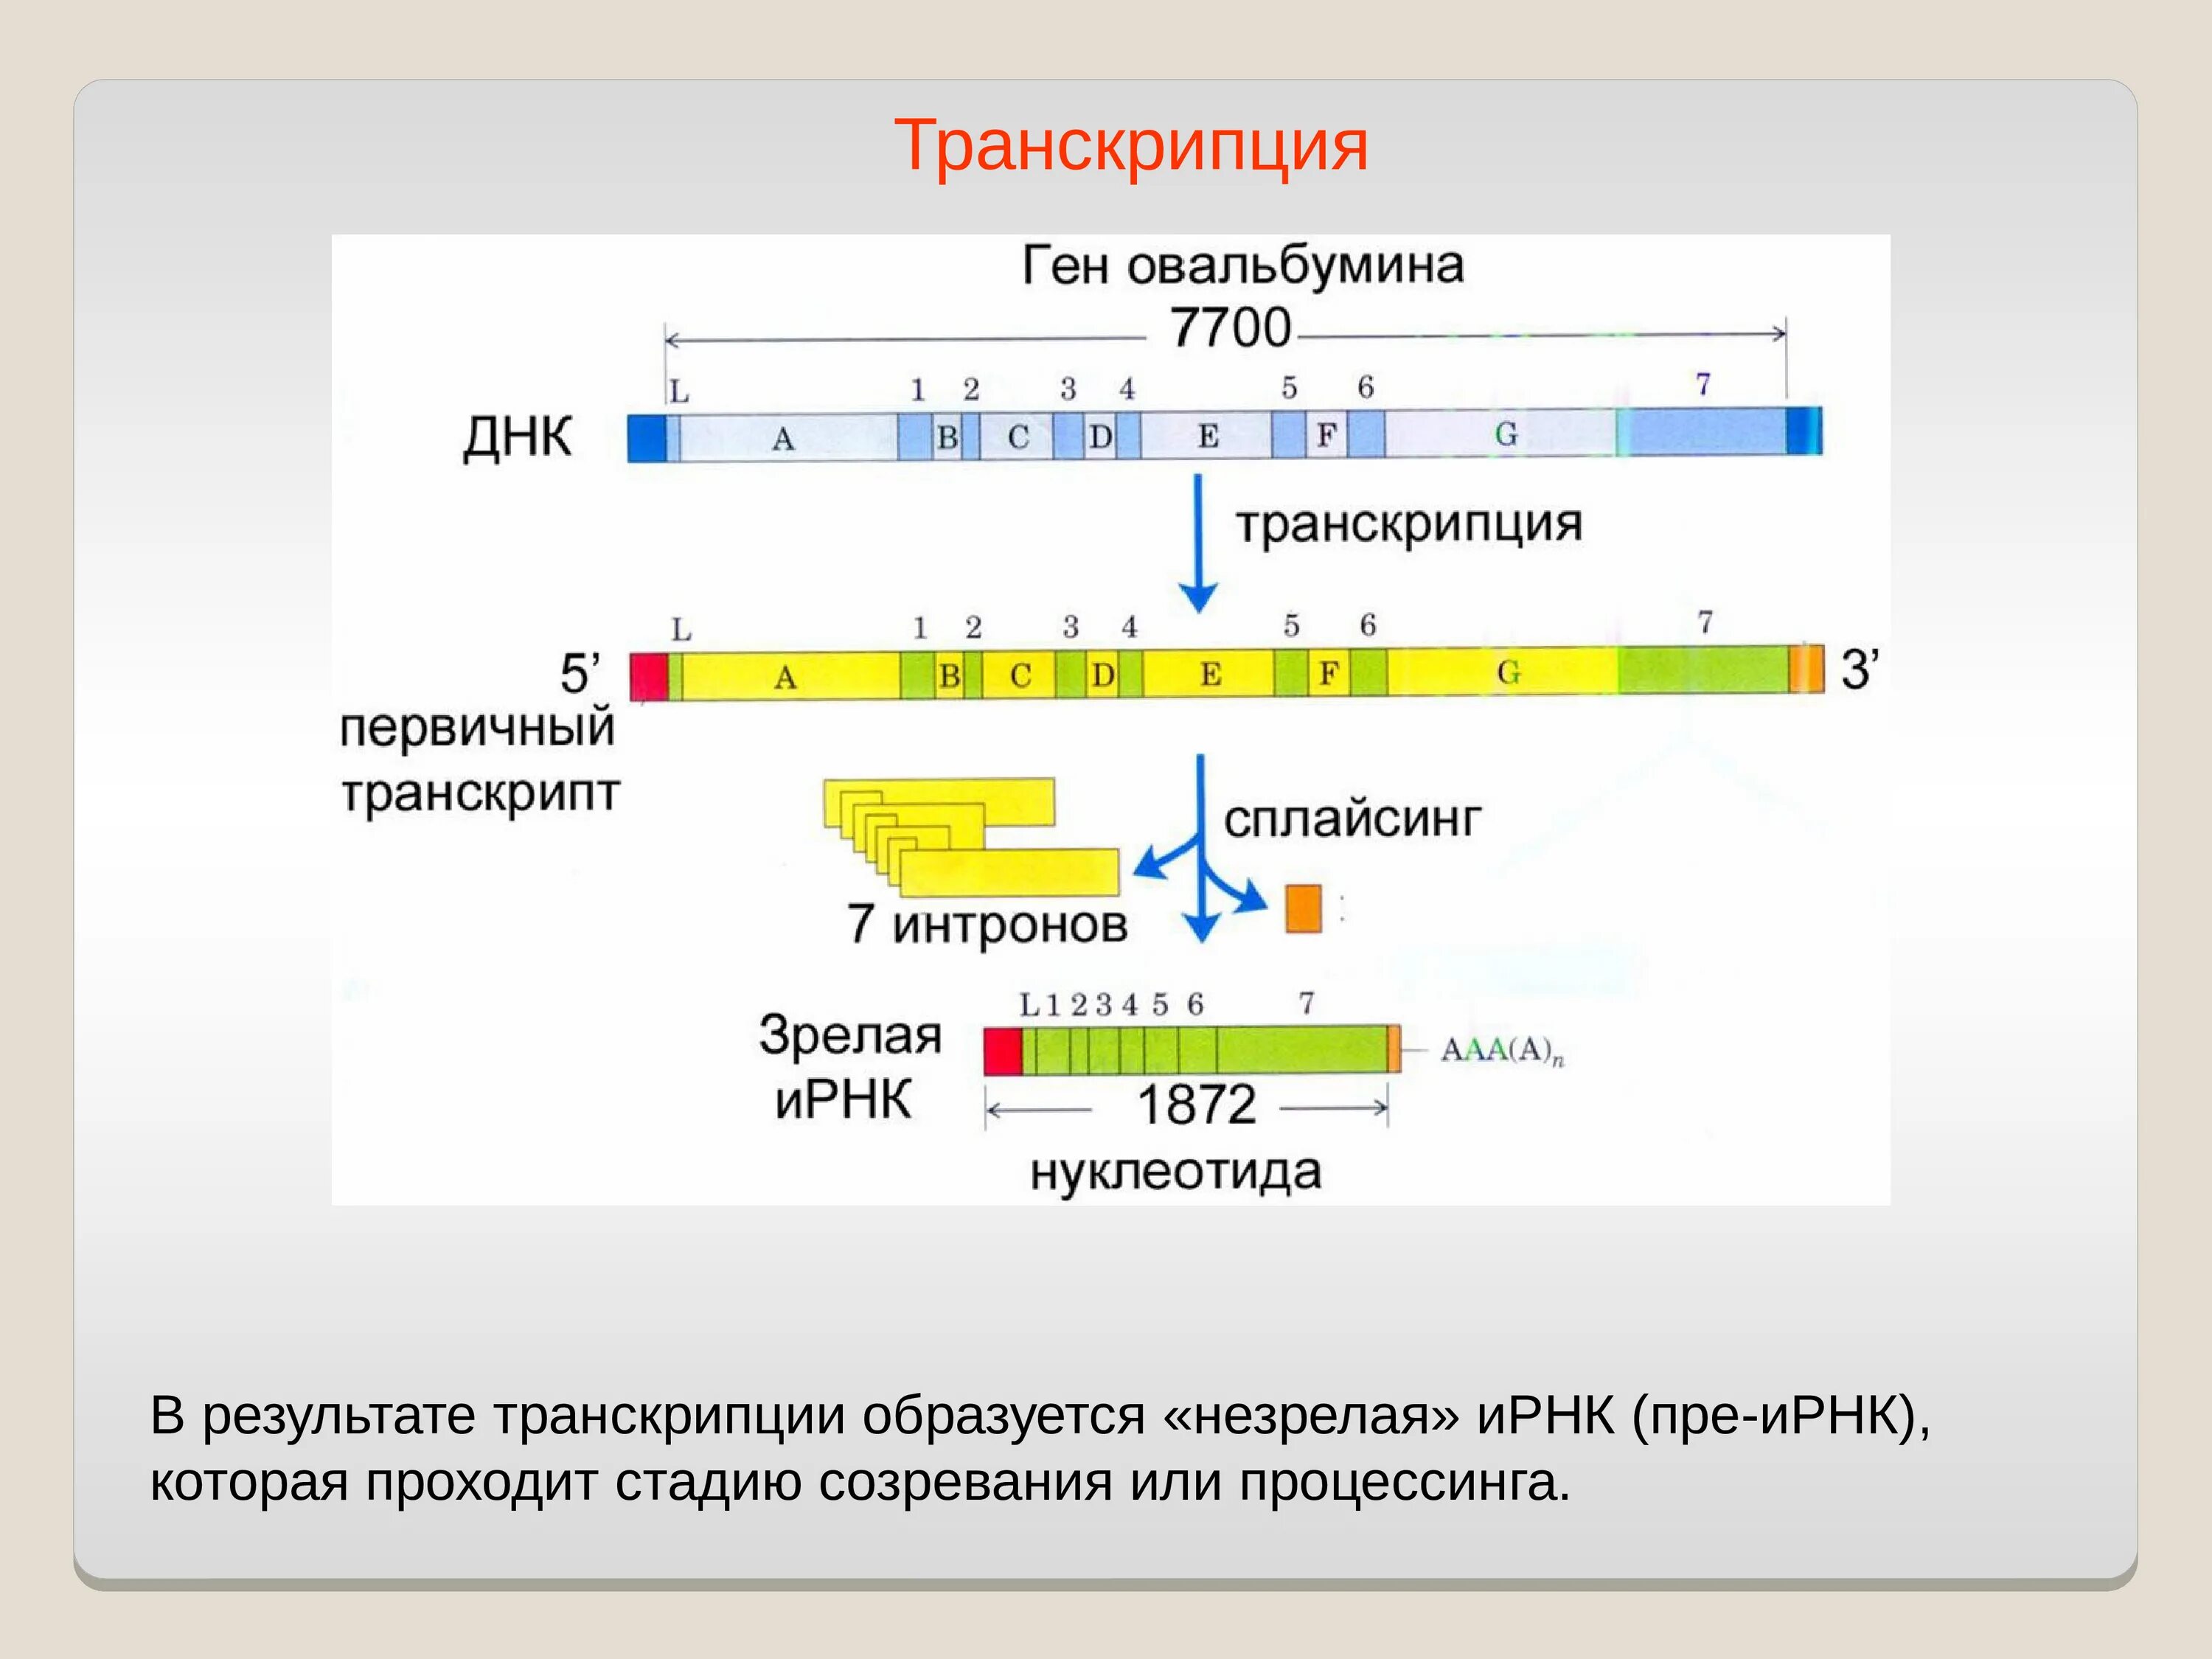 Hen транскрипция. Процессинг РНК этапы. Транскрипция. Транскрипция ДНК. Основной результат транскрипции.